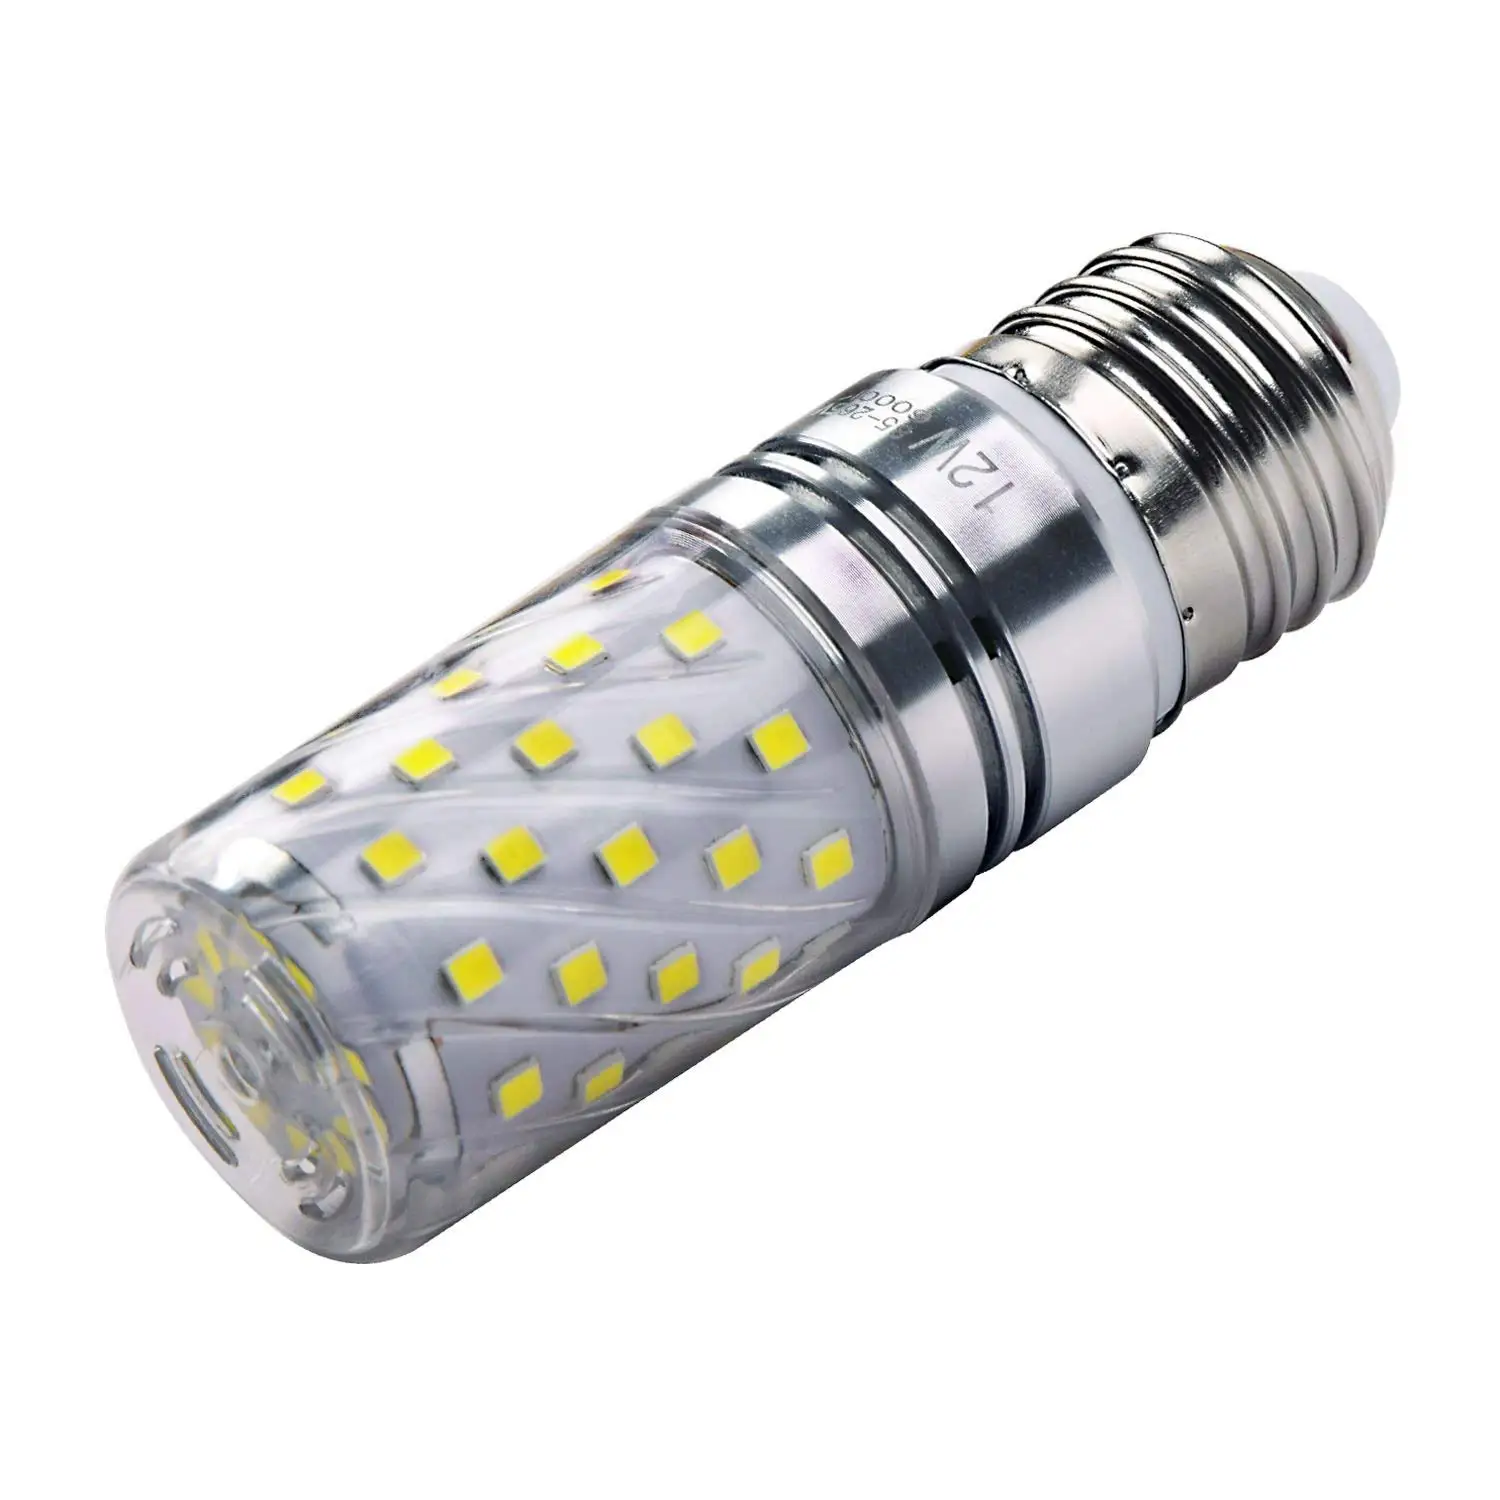 Светодиодный кукурузы лампы E27 12 Вт, 100 Вт лампы накаливания эквивалент, 6000 K Дневной свет Белый канделябры 1200Lm Эдисона светодиодный Light-4Pack